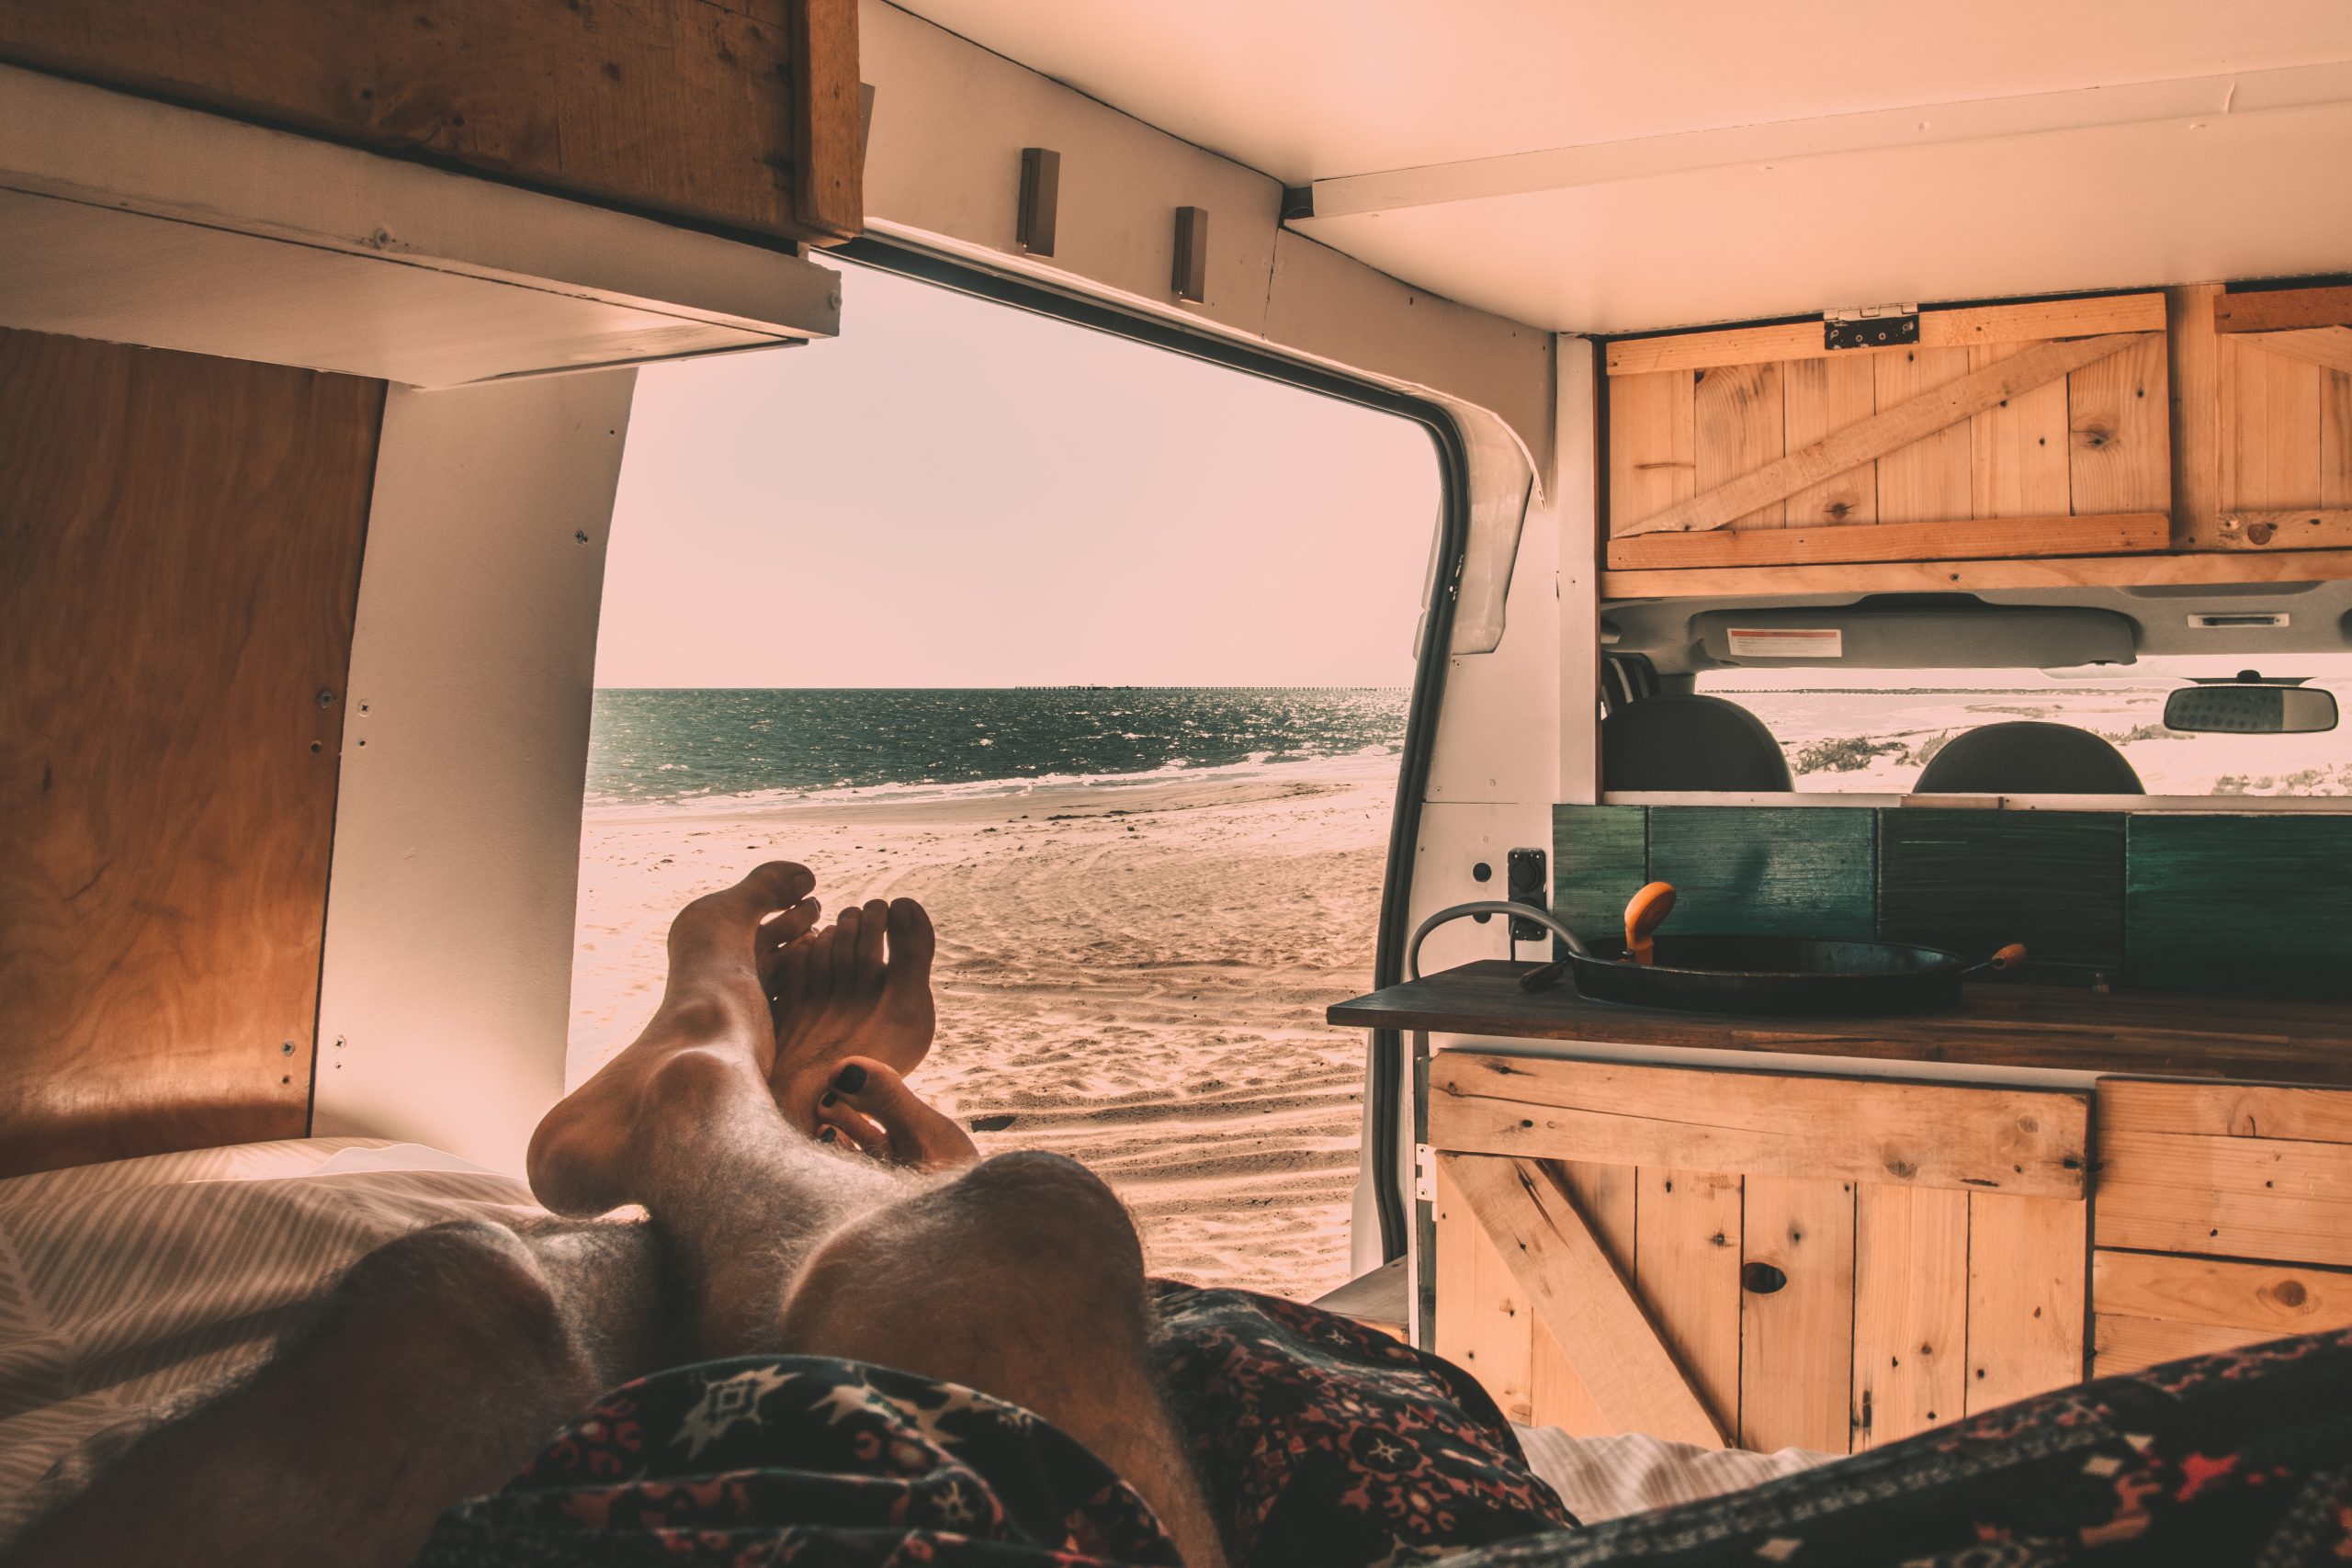 View of a beach from the bed of a camper van - DIY camper van